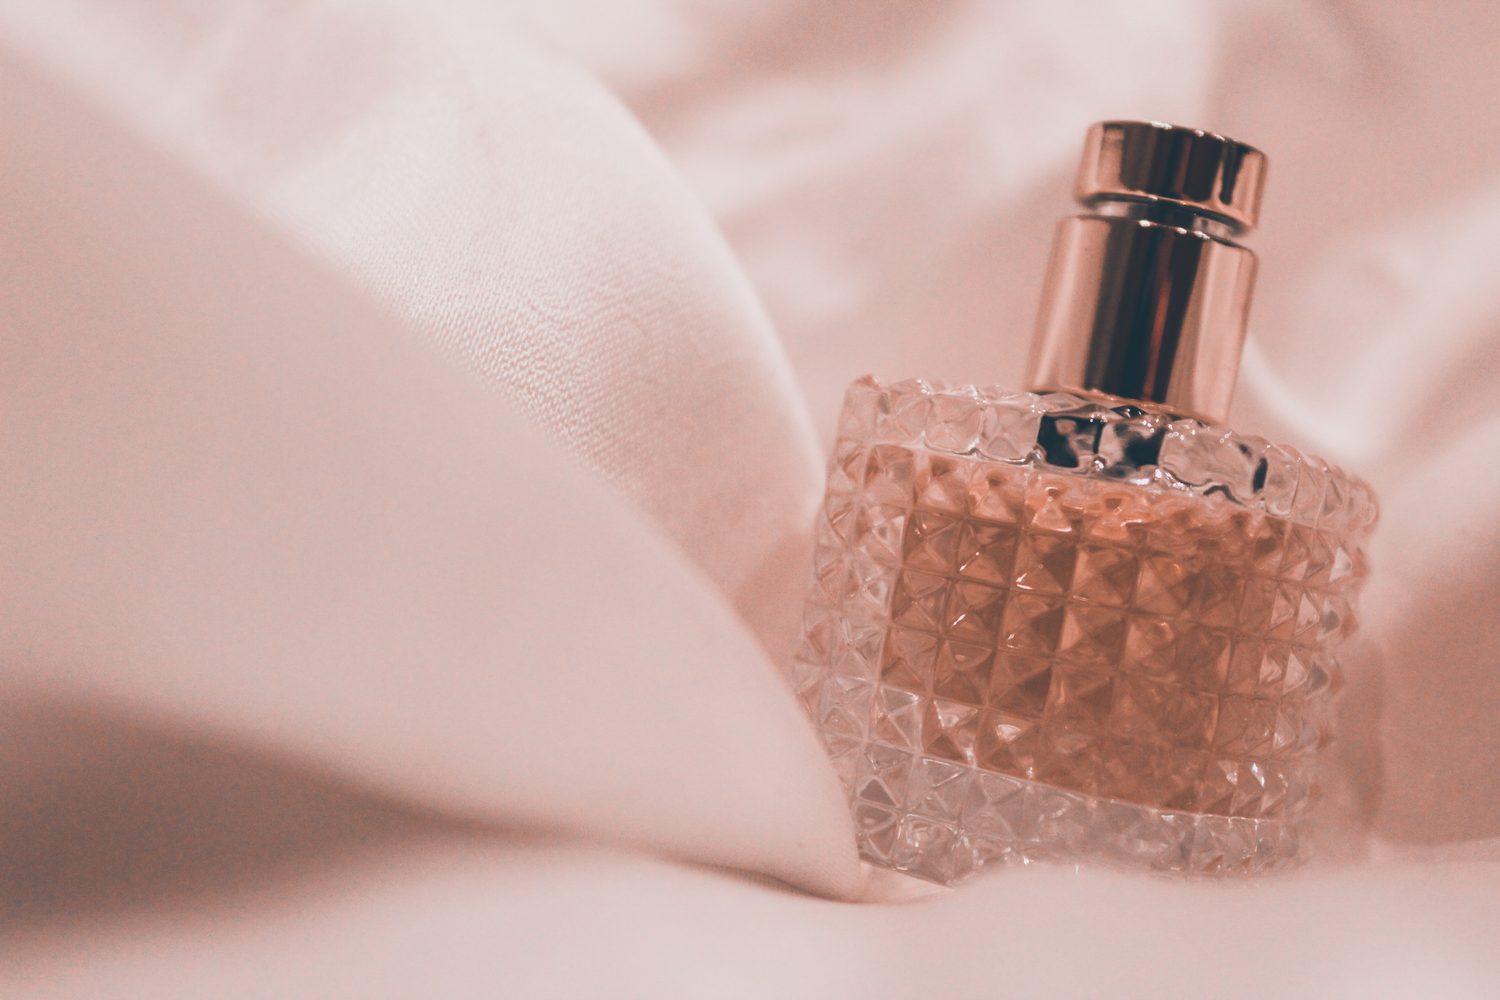 Syntetické parfemace ovlivňují centrální nervový systém, jsou podezírány z toho, že se při dlouhodobém užívání podílejí na vzniku rakoviny prsu a mohou způsobovat depresi, hyperaktivitu či podráždění.